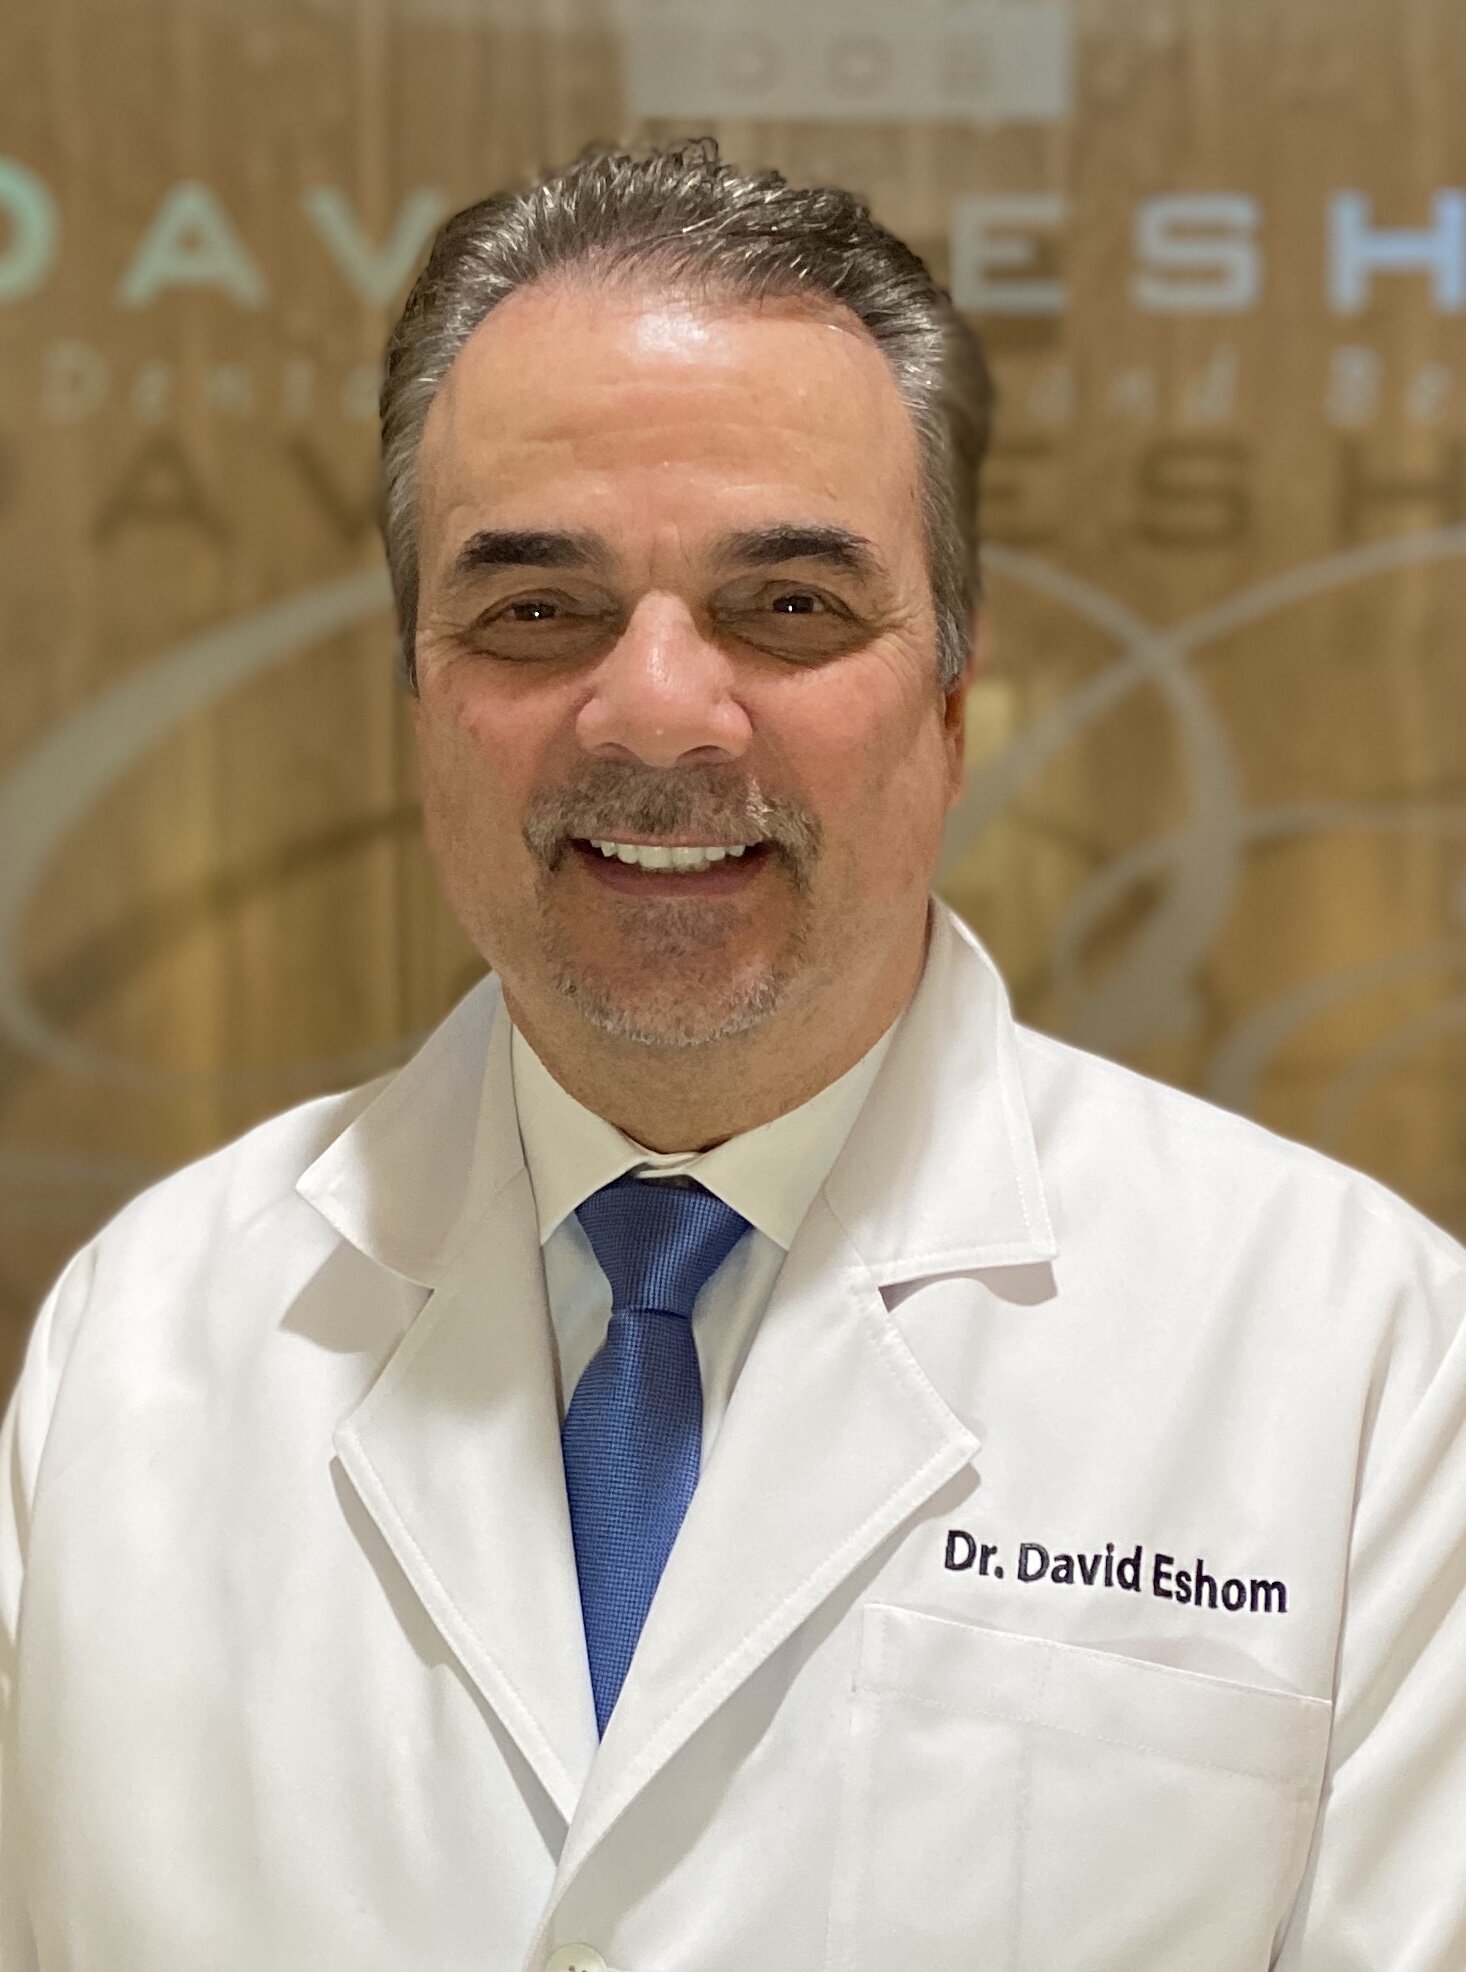 Dr. David Eshom